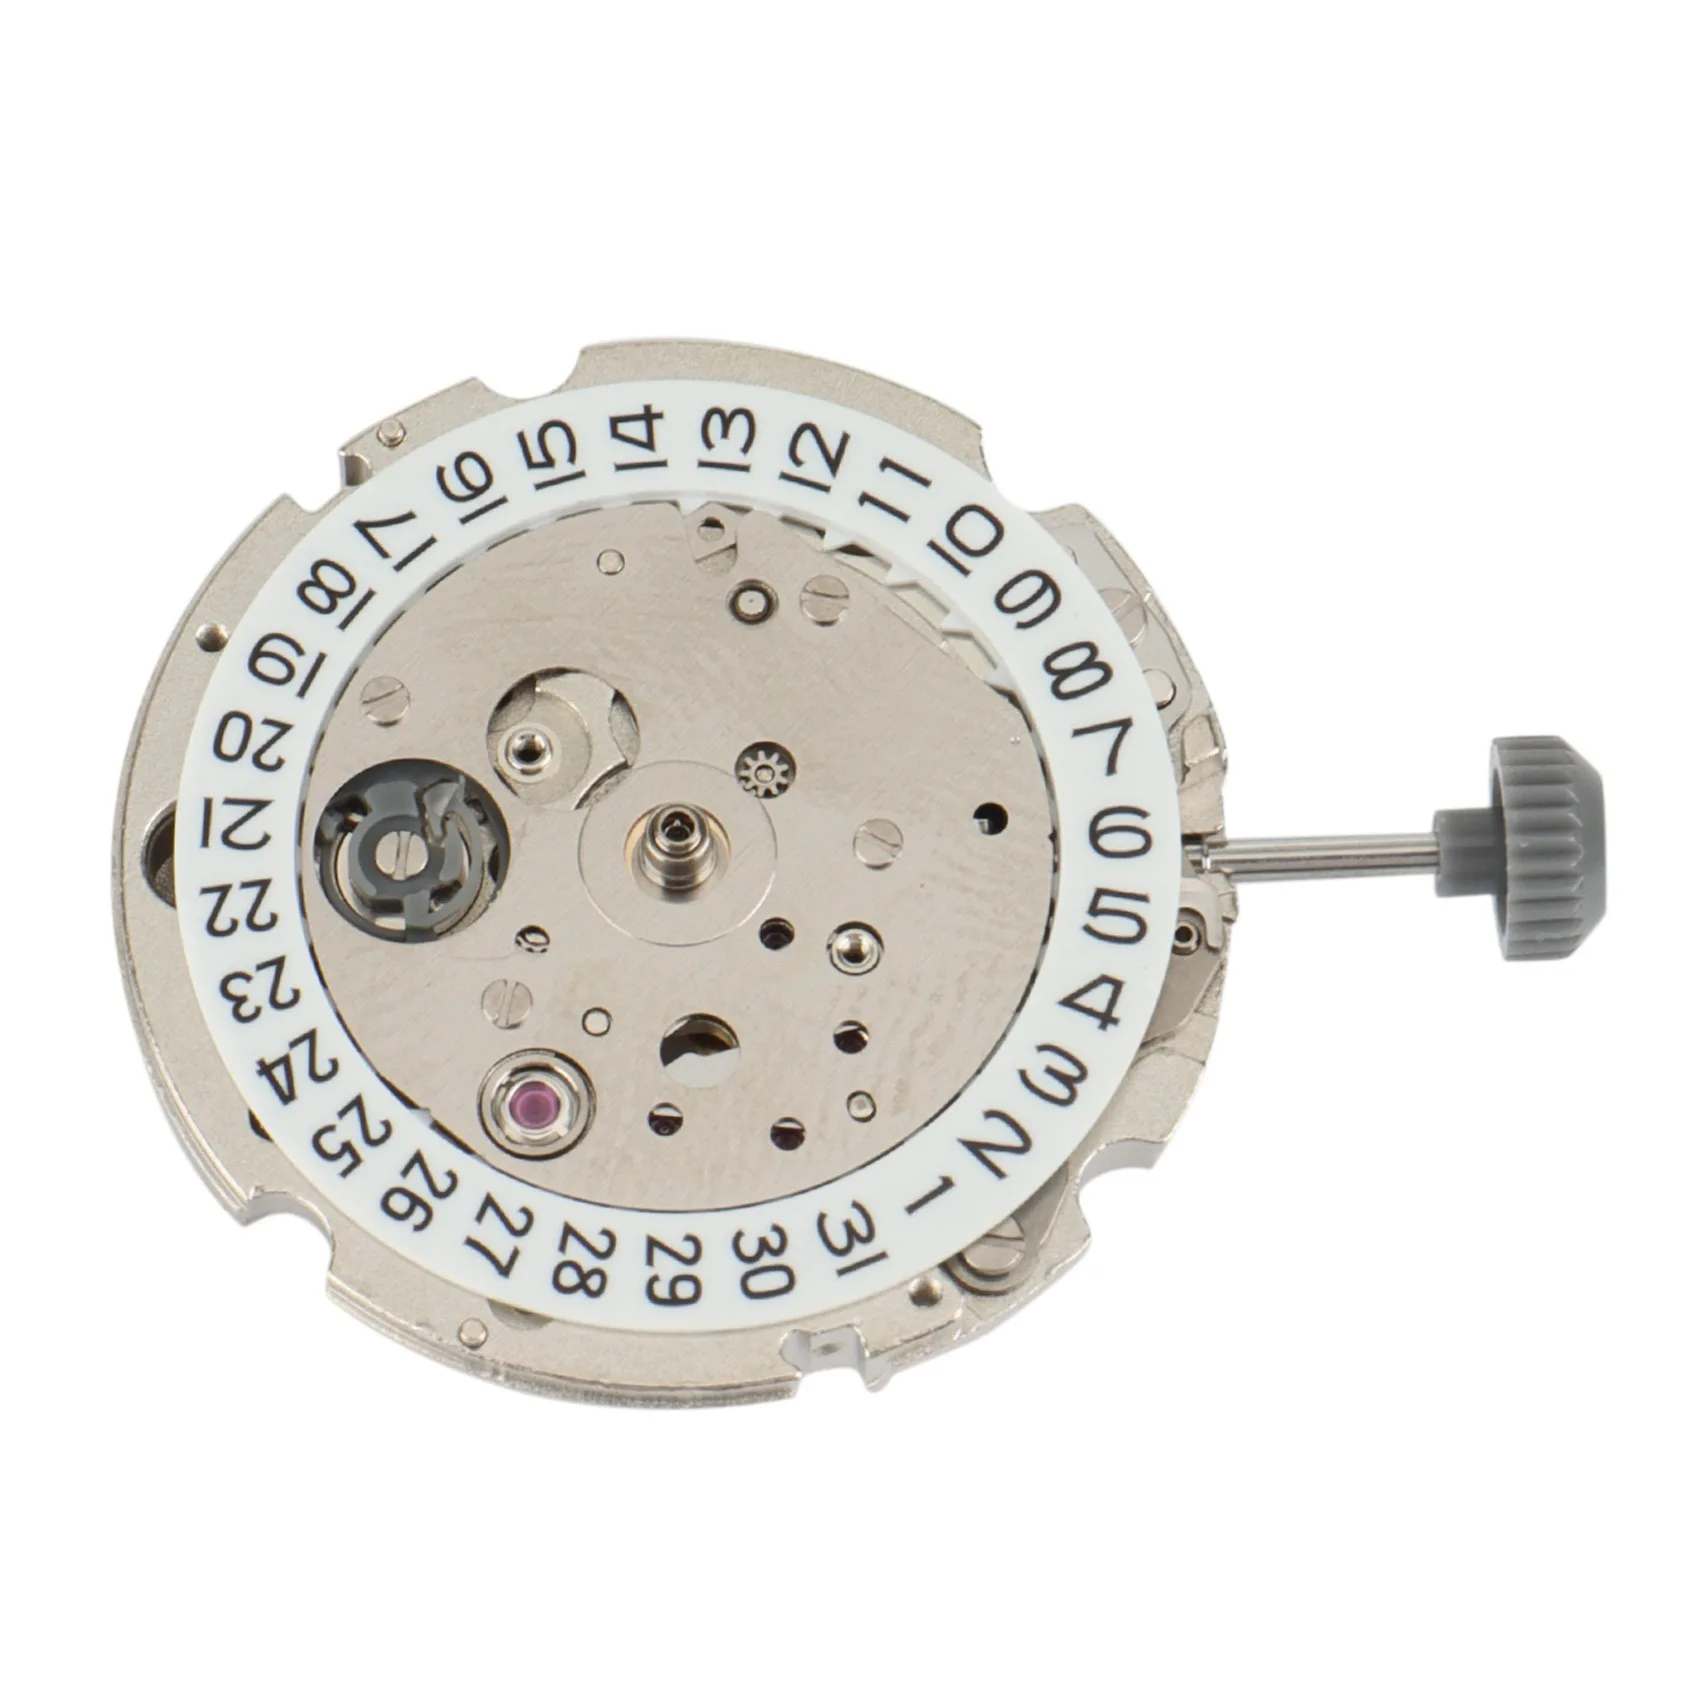 

Новинка, высококачественные японские часы MIYOTA 8215, 21 драгоценность, часы с черным механизмом, колесо даты, нержавеющая сталь